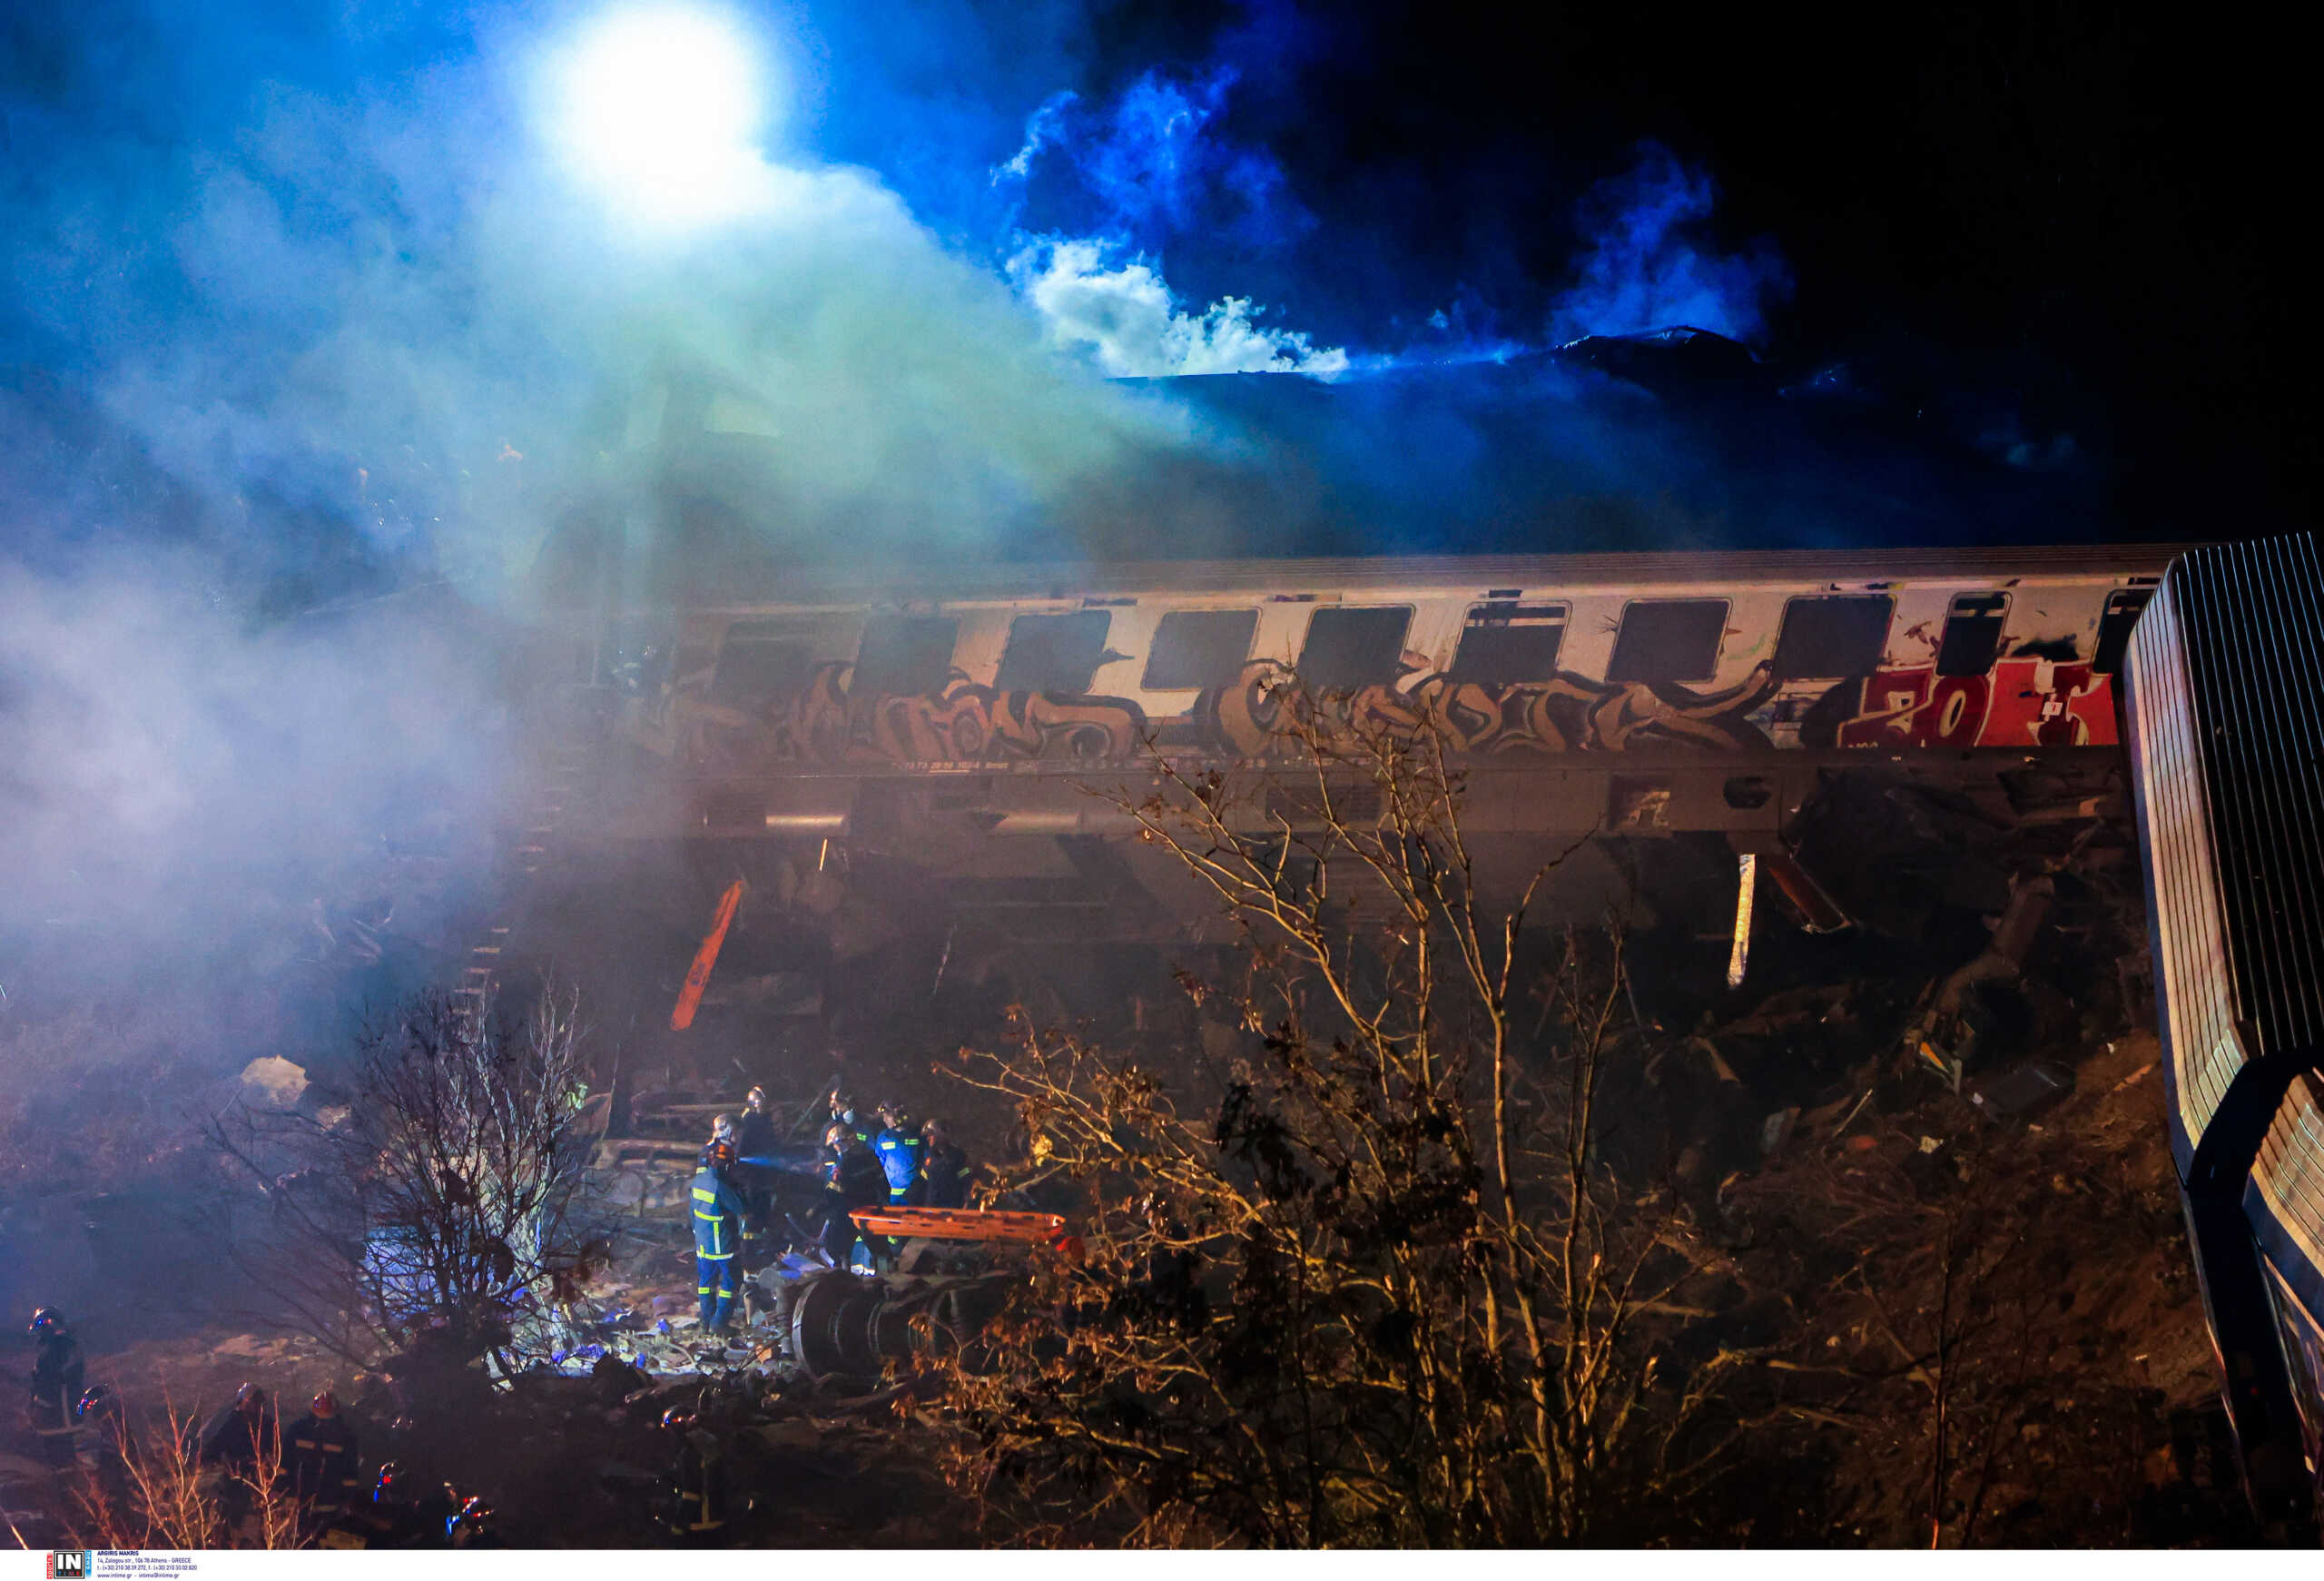 Σύγκρουση τρένων στα Τέμπη: Ο Κώστας Αγοραστός εξηγεί τι συνέβη με τα 3 πρώτα βαγόνια που διαλύθηκαν